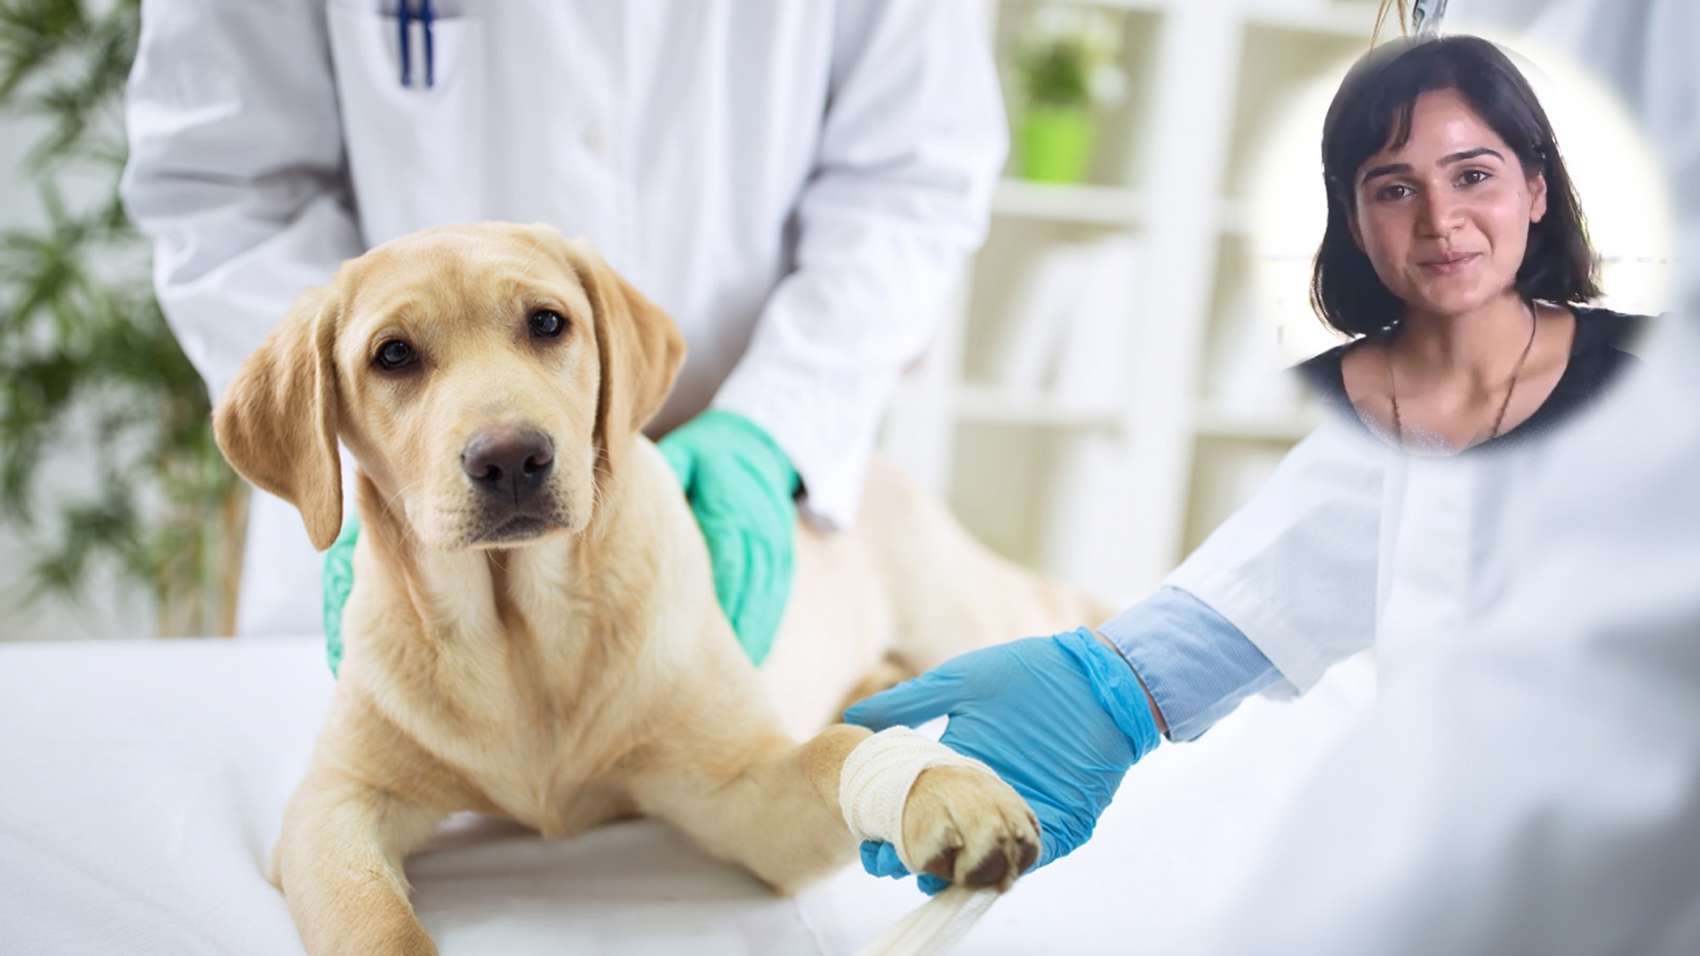 Career in Veterinary Medicine